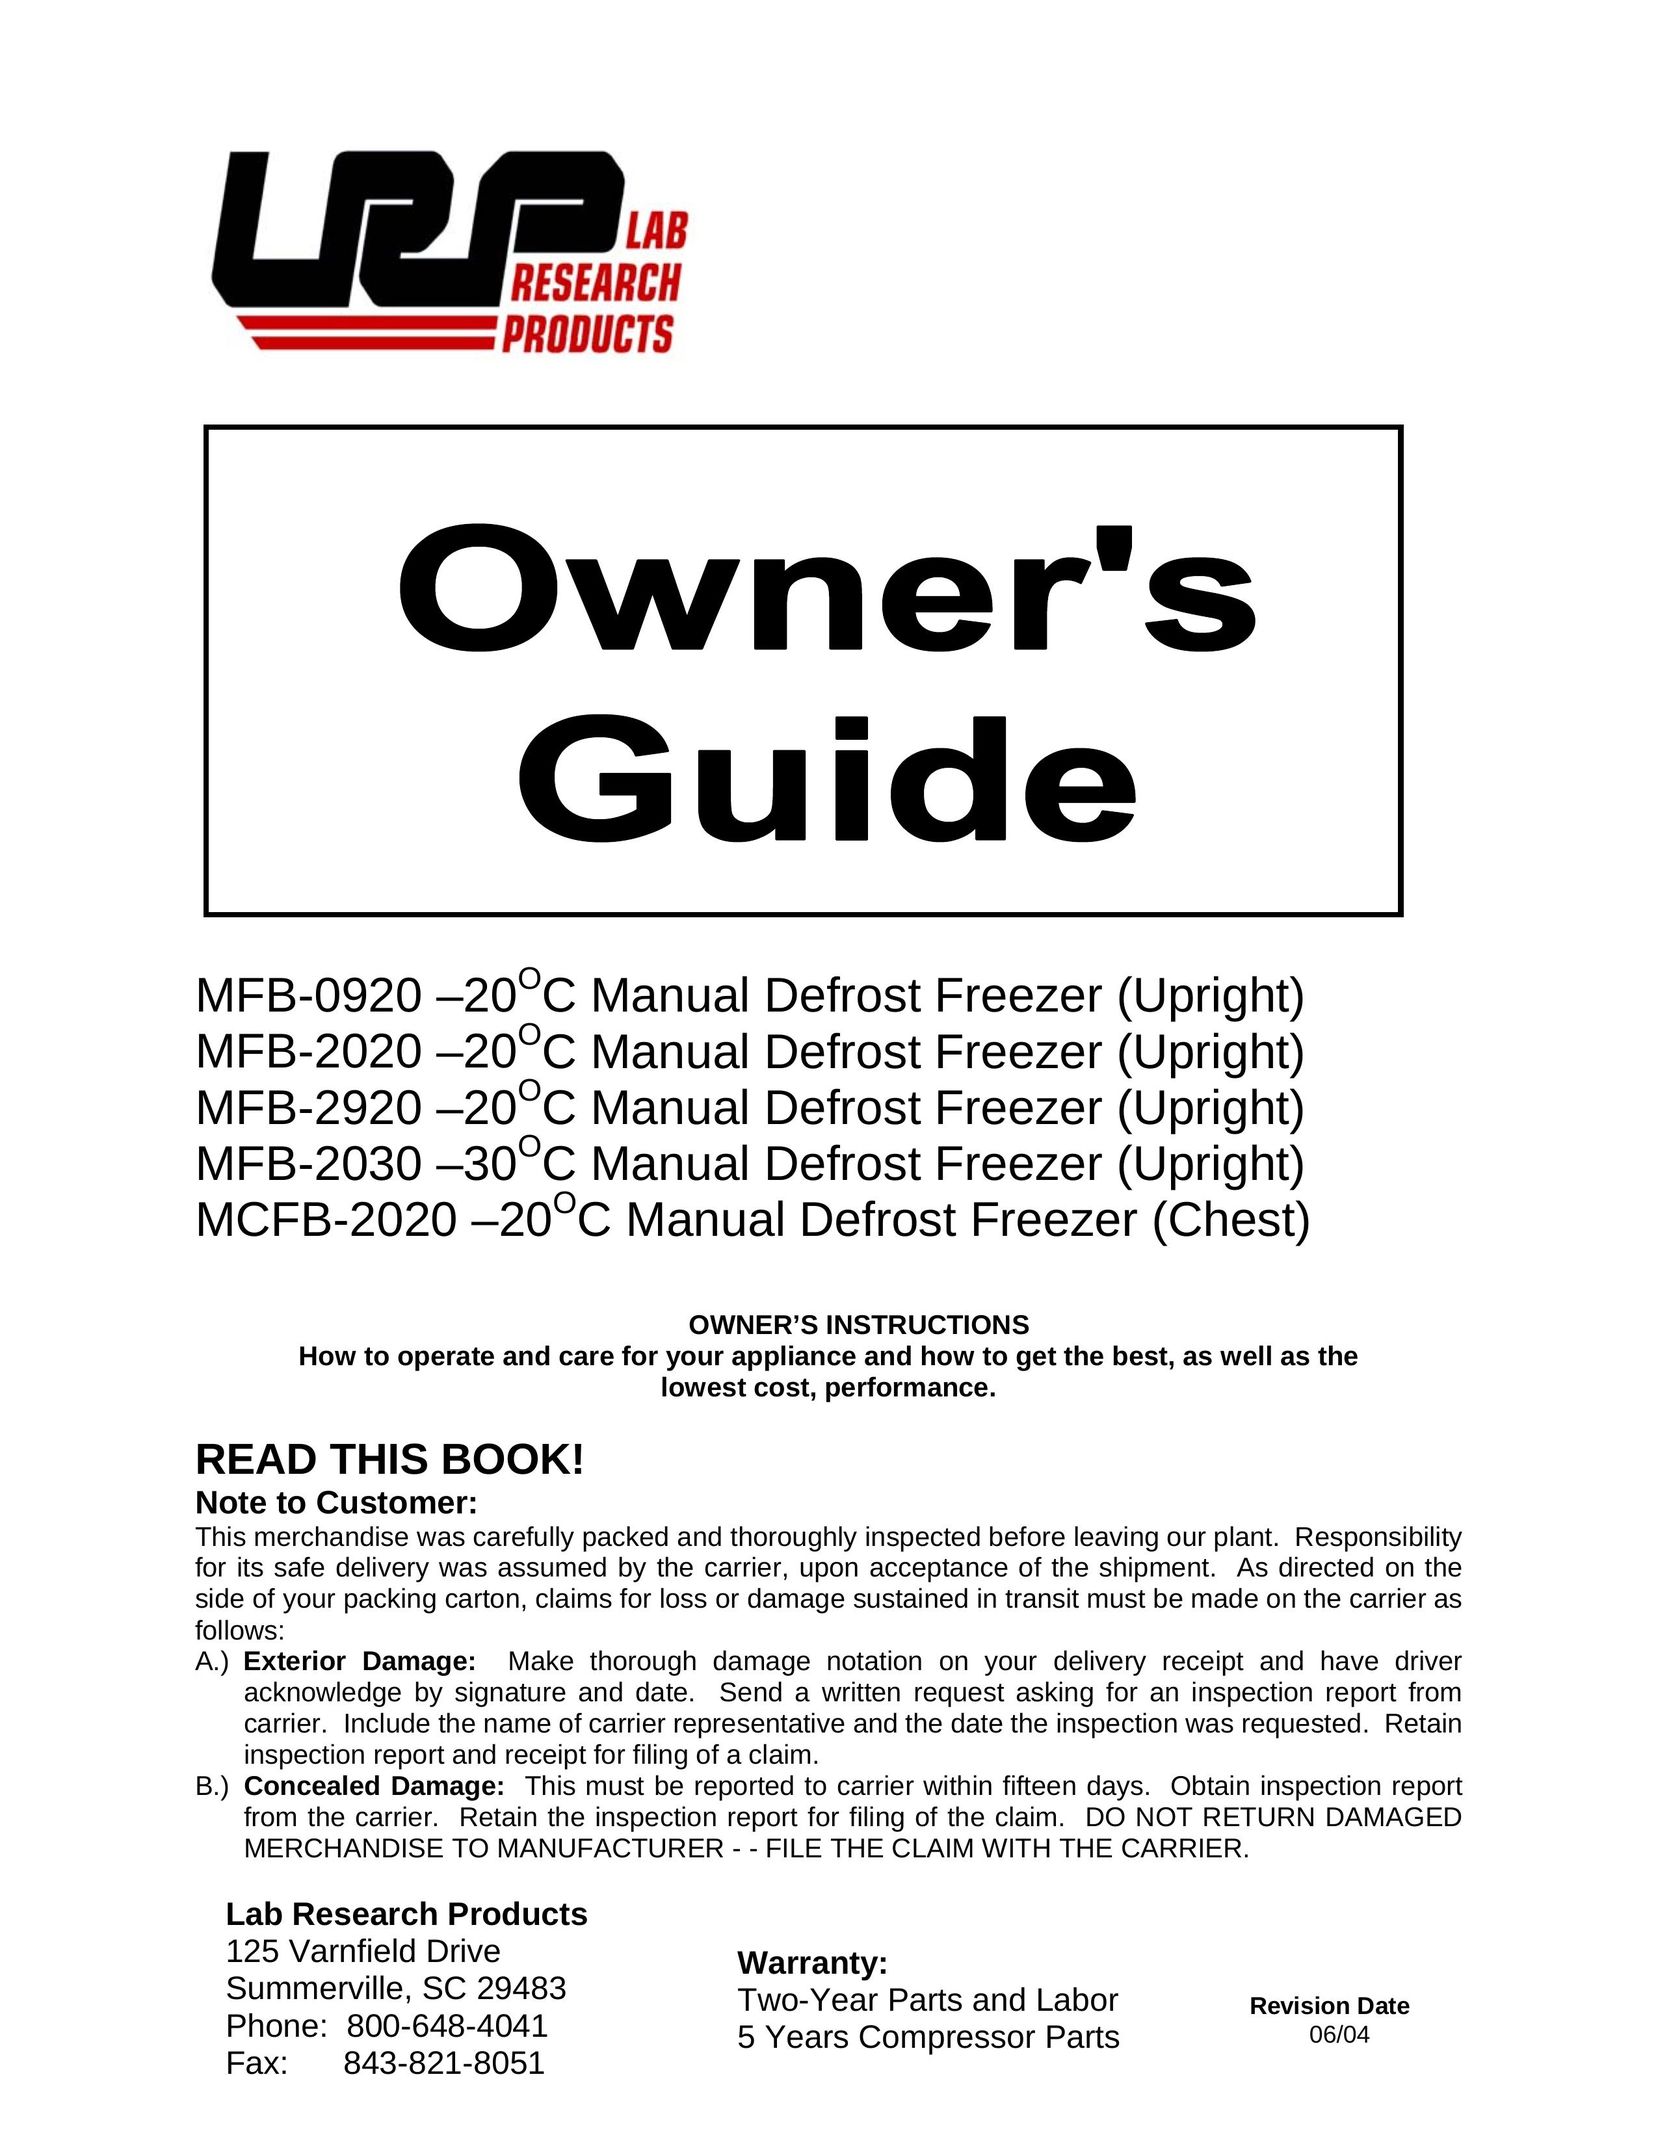 Aprilaire MCFB-2020 Freezer User Manual